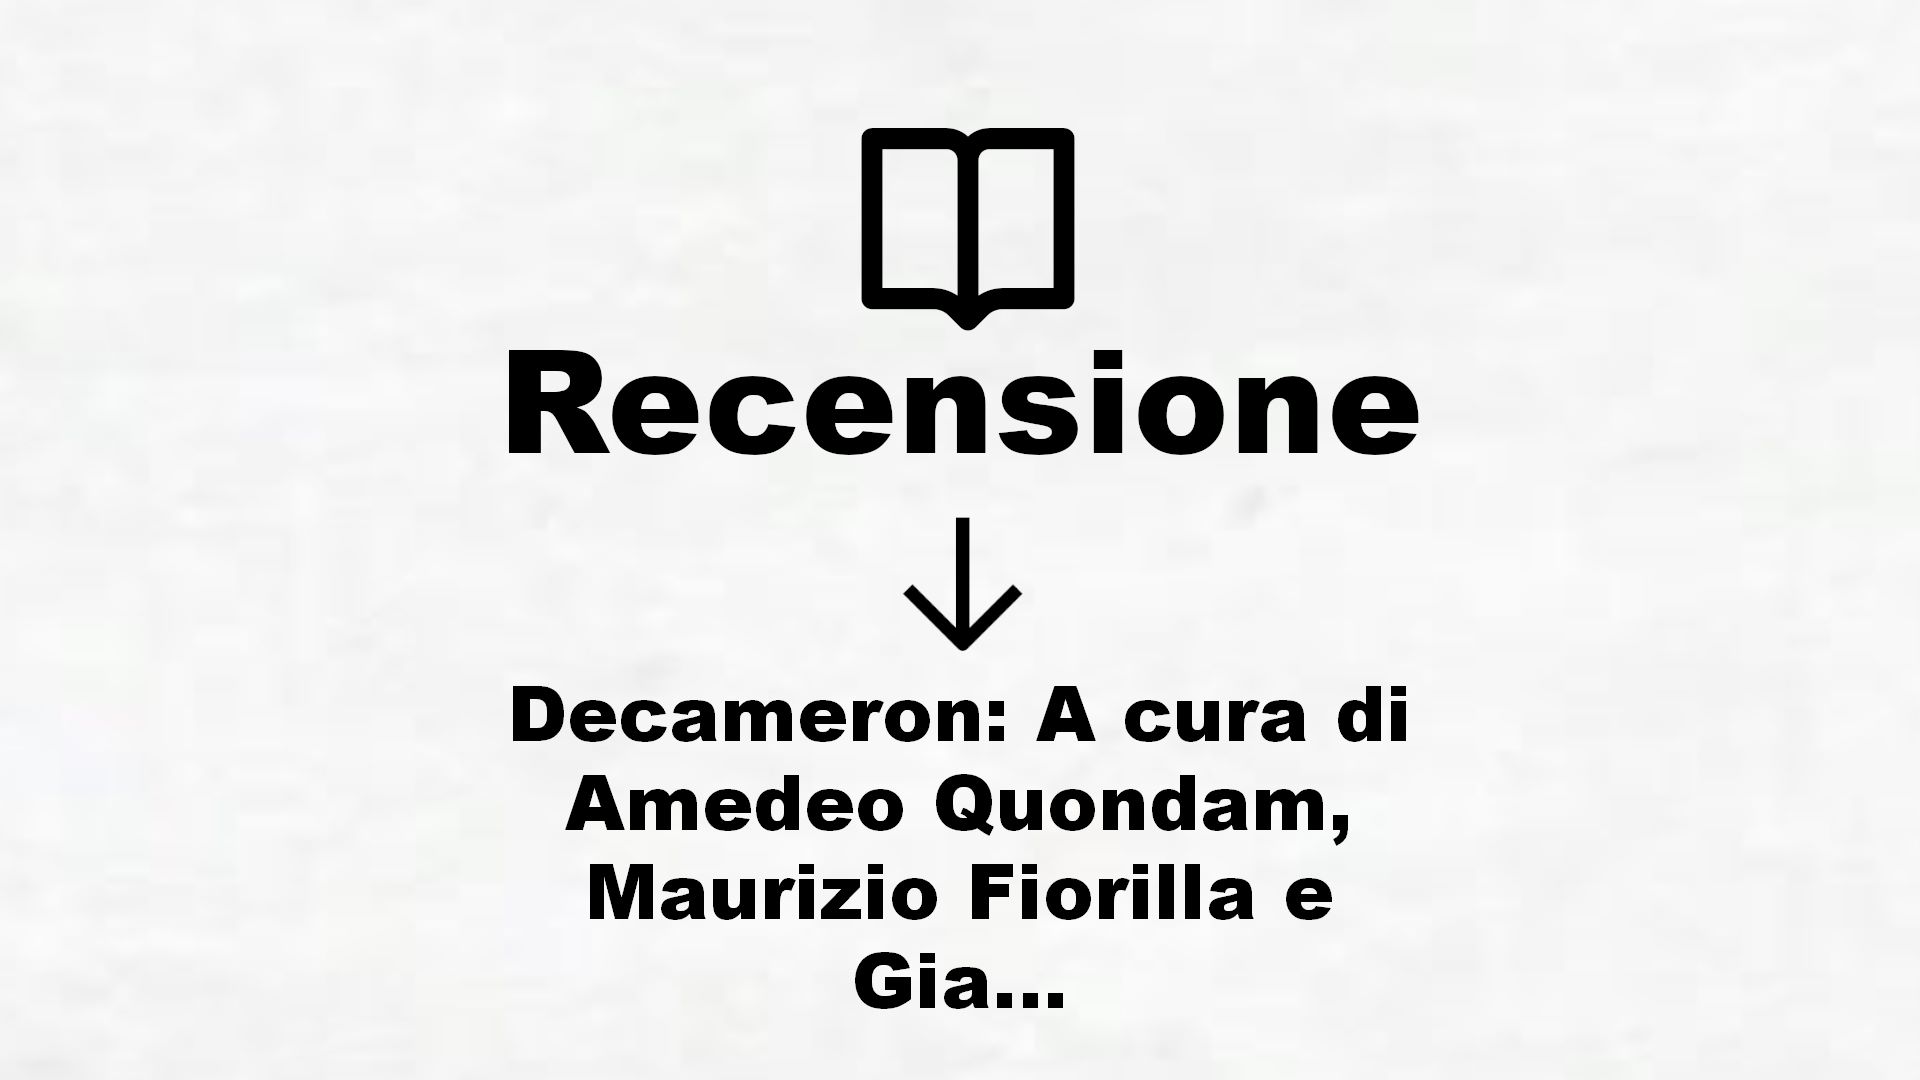 Decameron: A cura di Amedeo Quondam, Maurizio Fiorilla e Giancarlo Alfano (Classici) – Recensione Libro